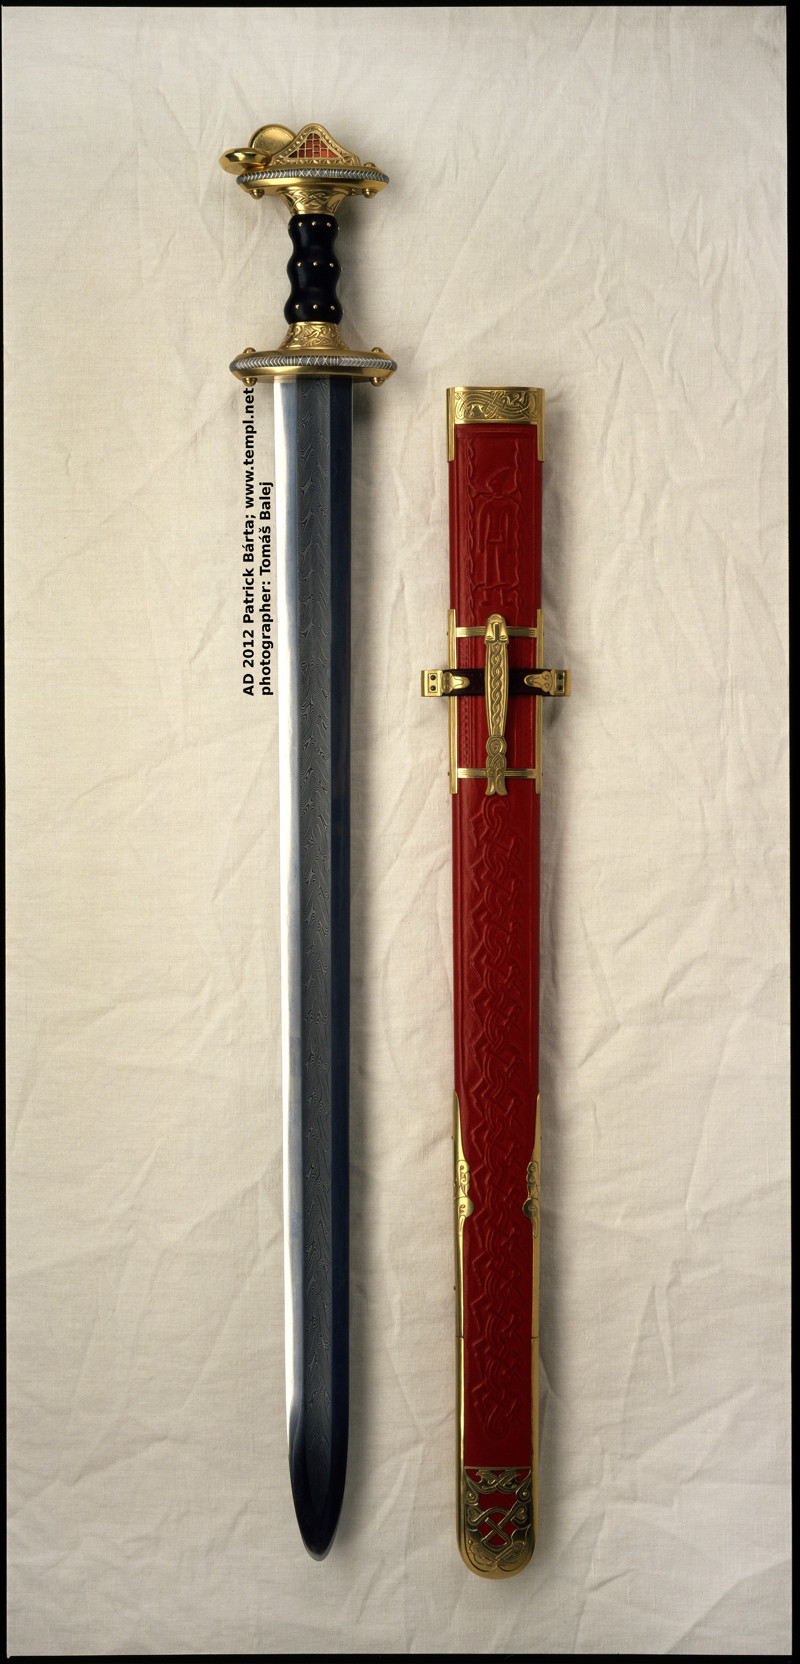 Меч меровингского типа или как выглядел меч короля Артура